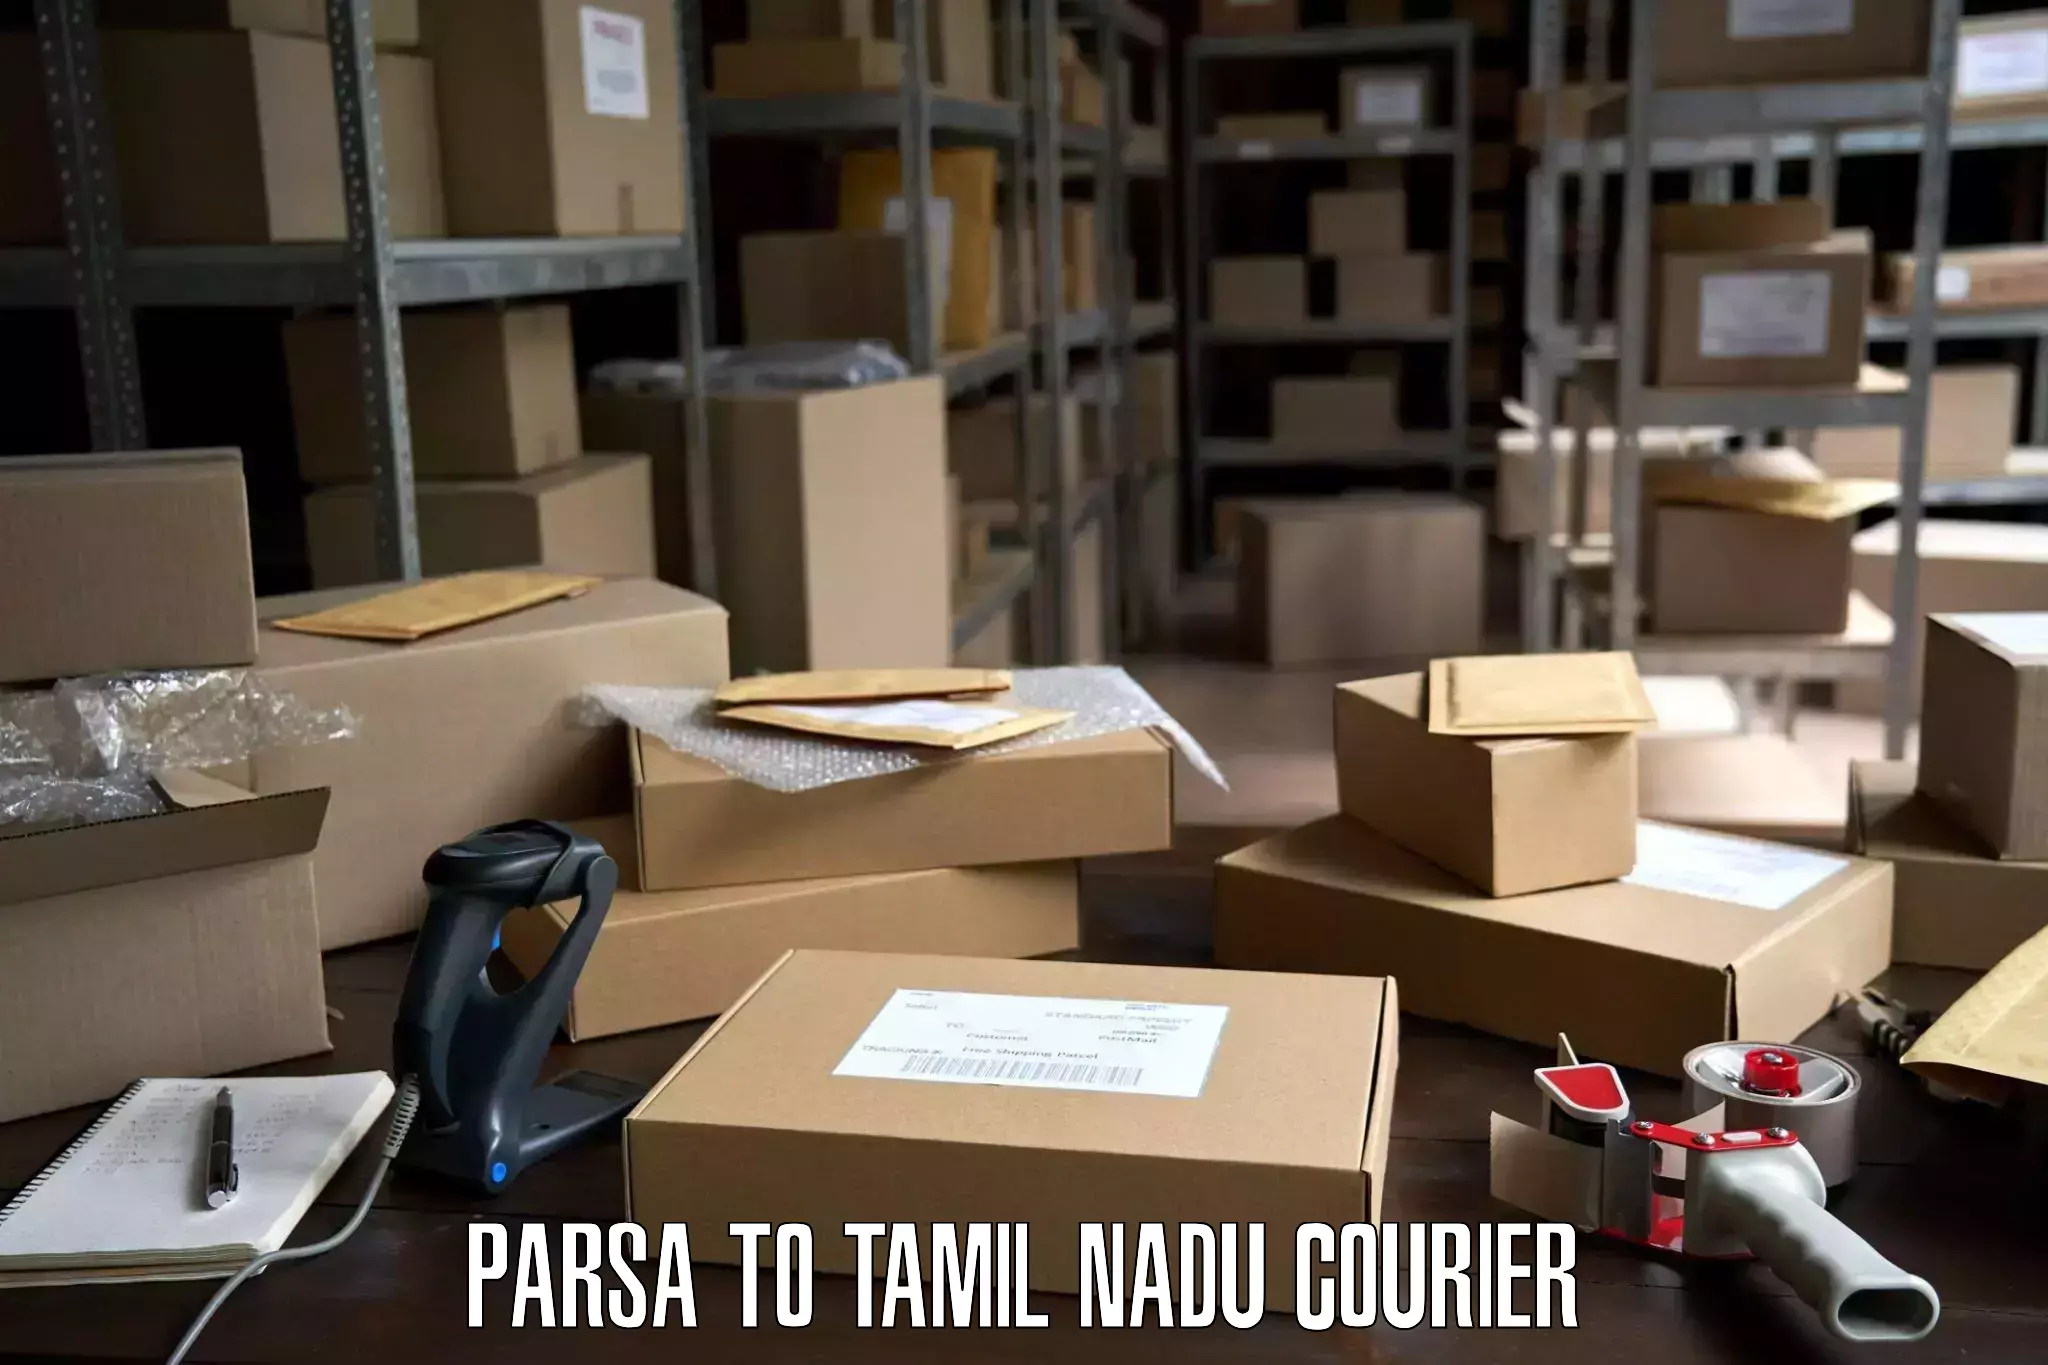 Furniture transport specialists Parsa to Tamil Nadu